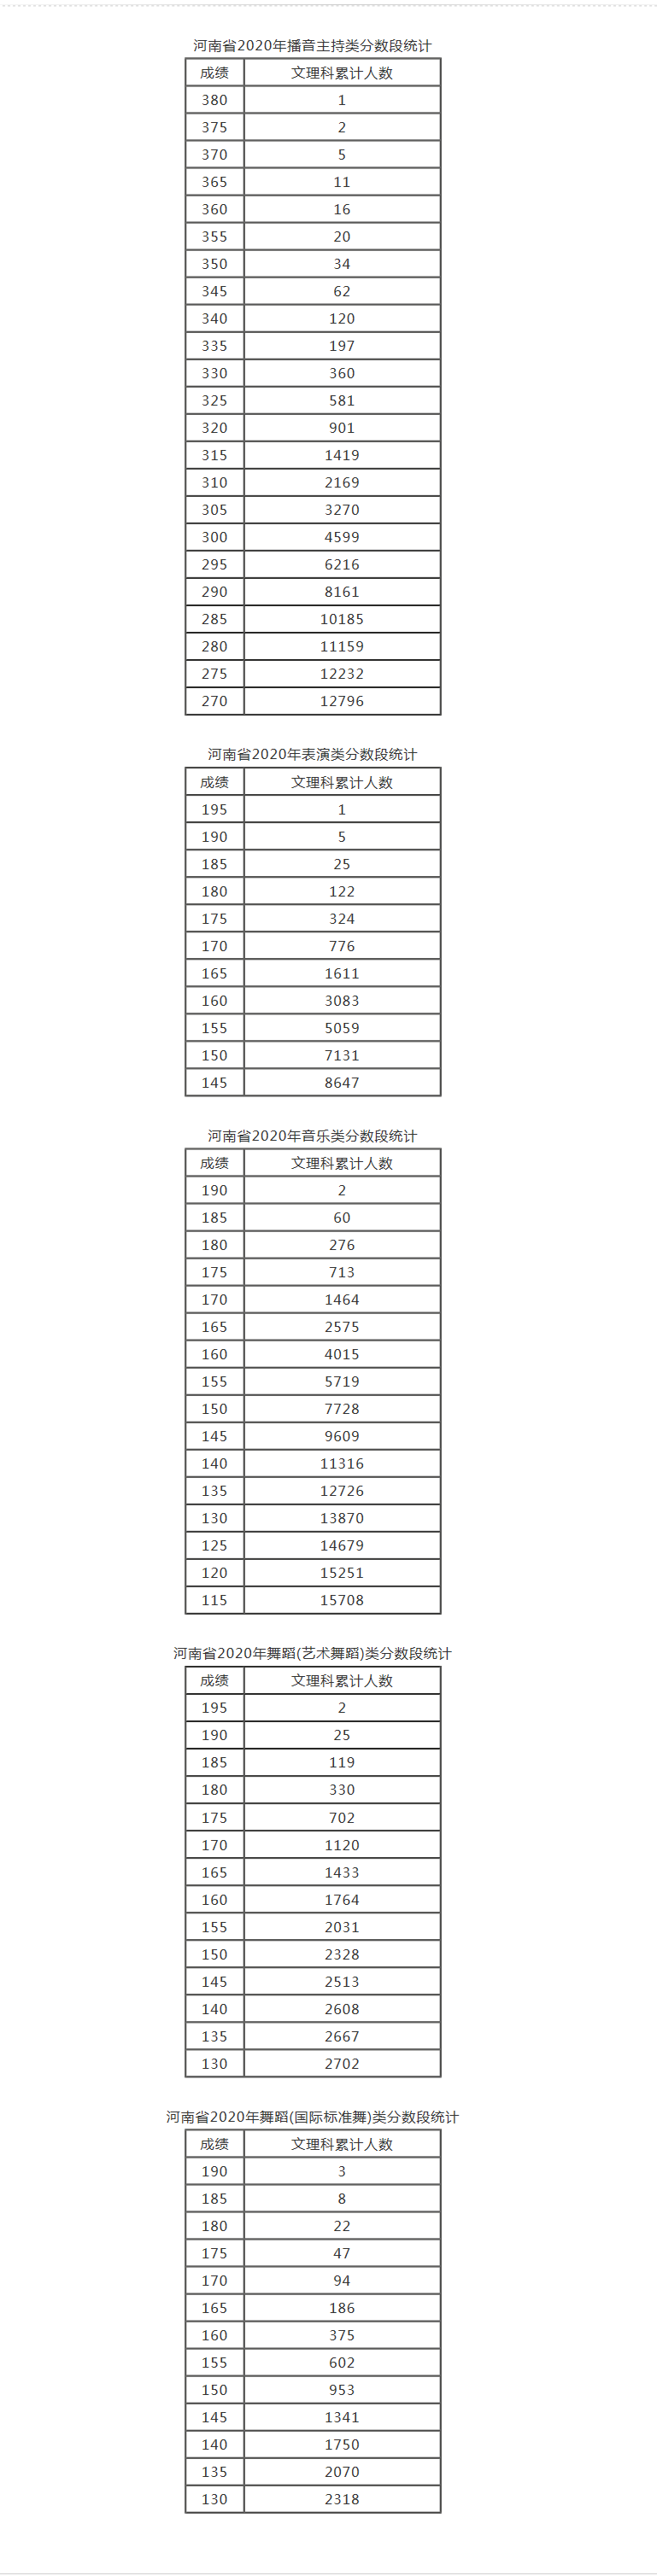 河南省2020年艺术类分数段统计表(播音主持，表演，音乐，舞蹈含艺术舞蹈、国际标准舞).png